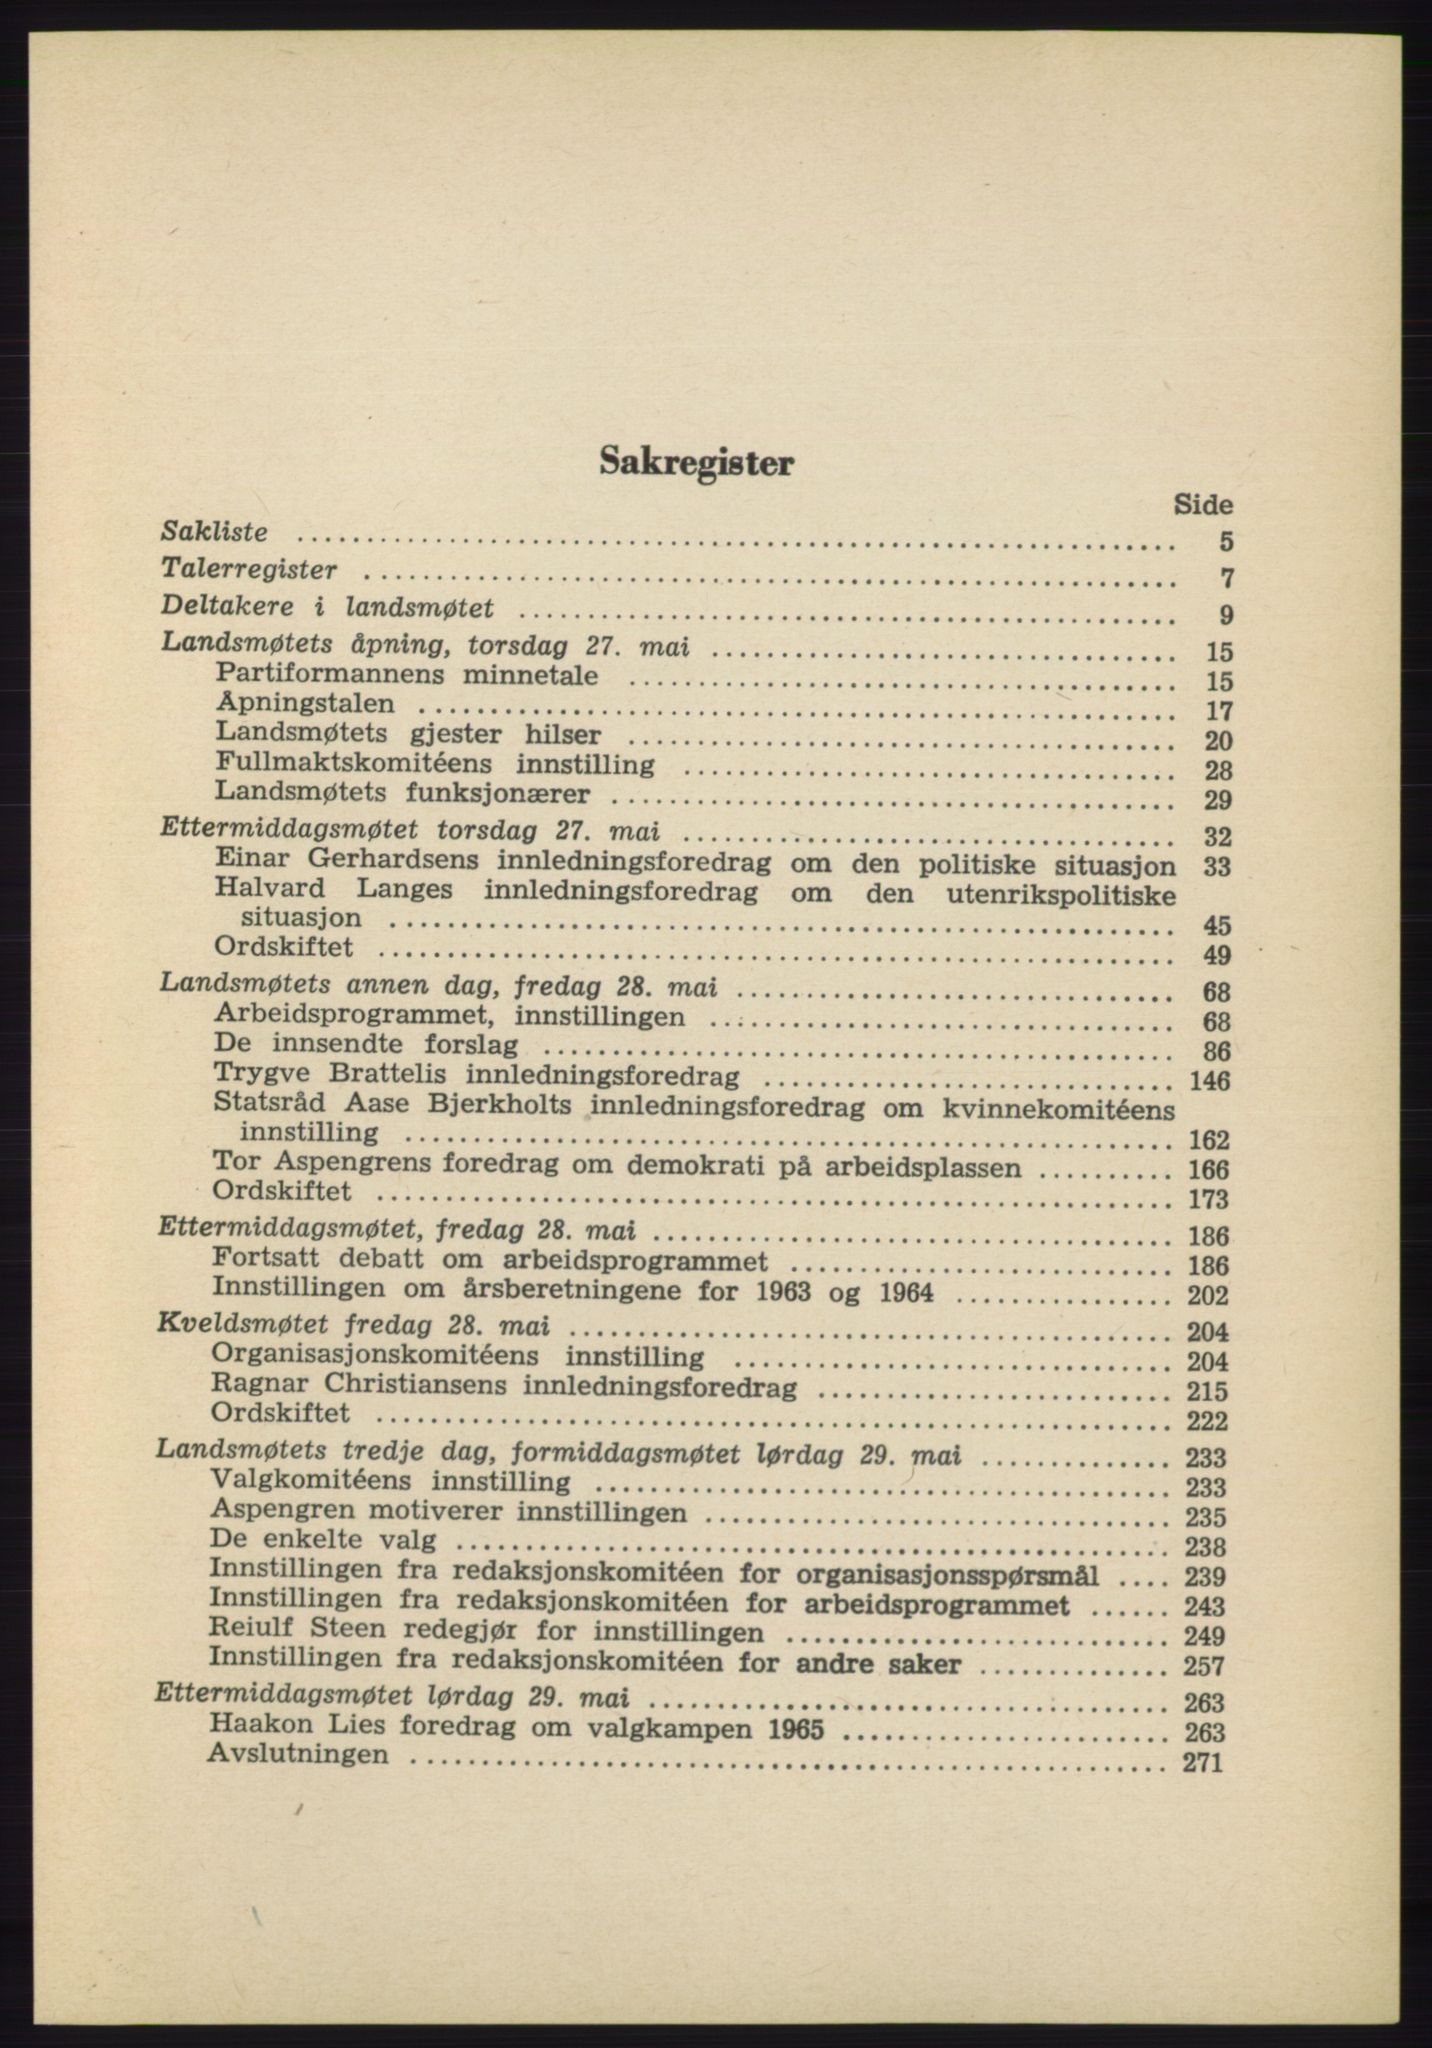 Det norske Arbeiderparti - publikasjoner, AAB/-/-/-: Protokoll over forhandlingene på det 40. ordinære landsmøte 27.-29. mai 1965 i Oslo, 1965